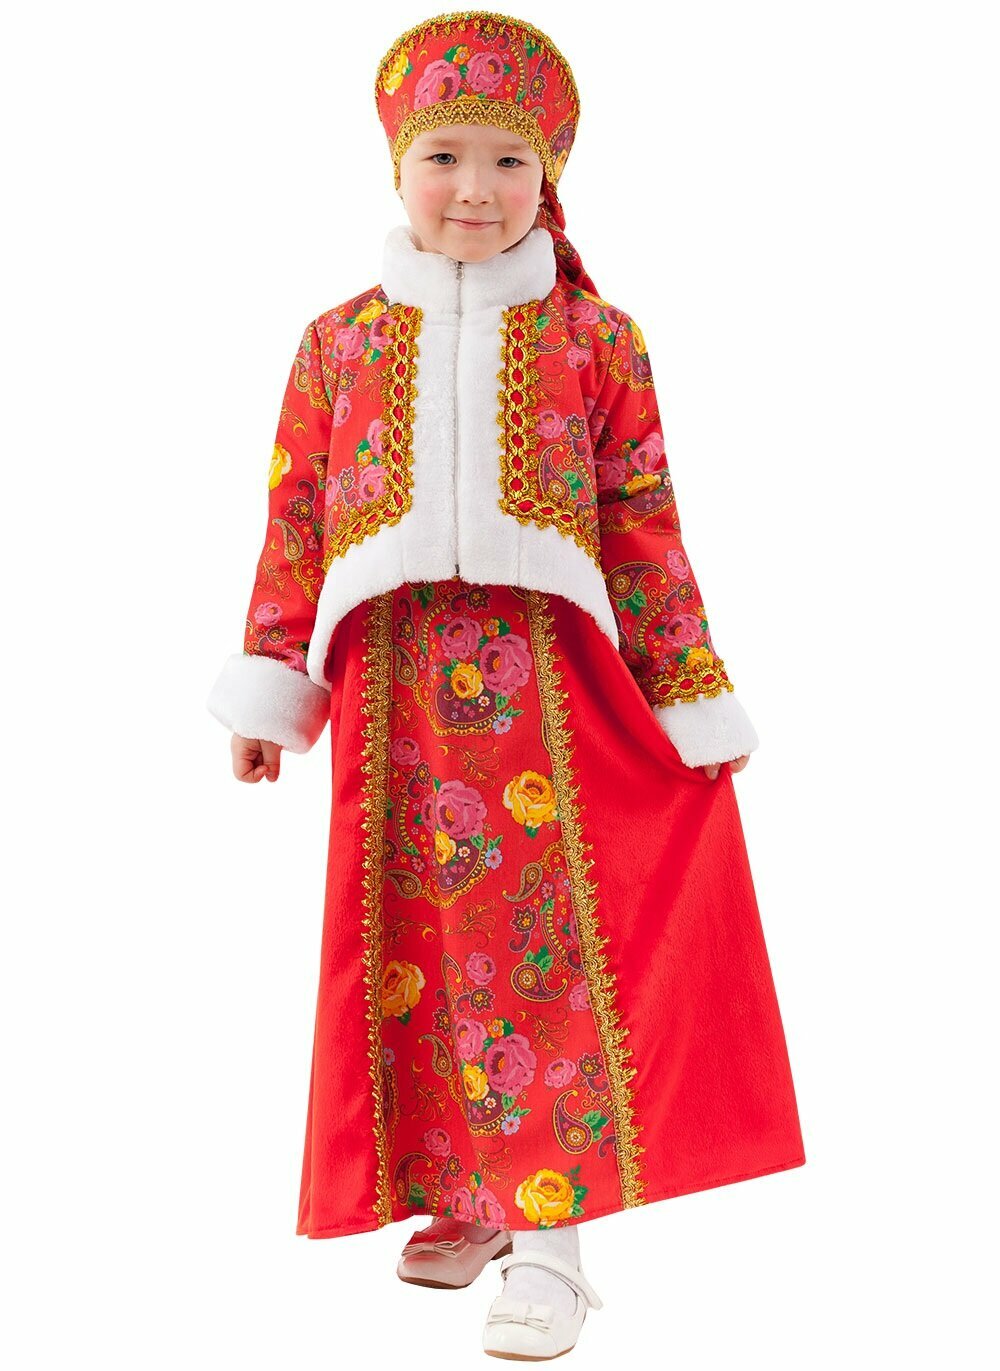 Костюм Масленица, русский народный, для девочки, размер 34, рост 134 см, на 9 лет , Батик